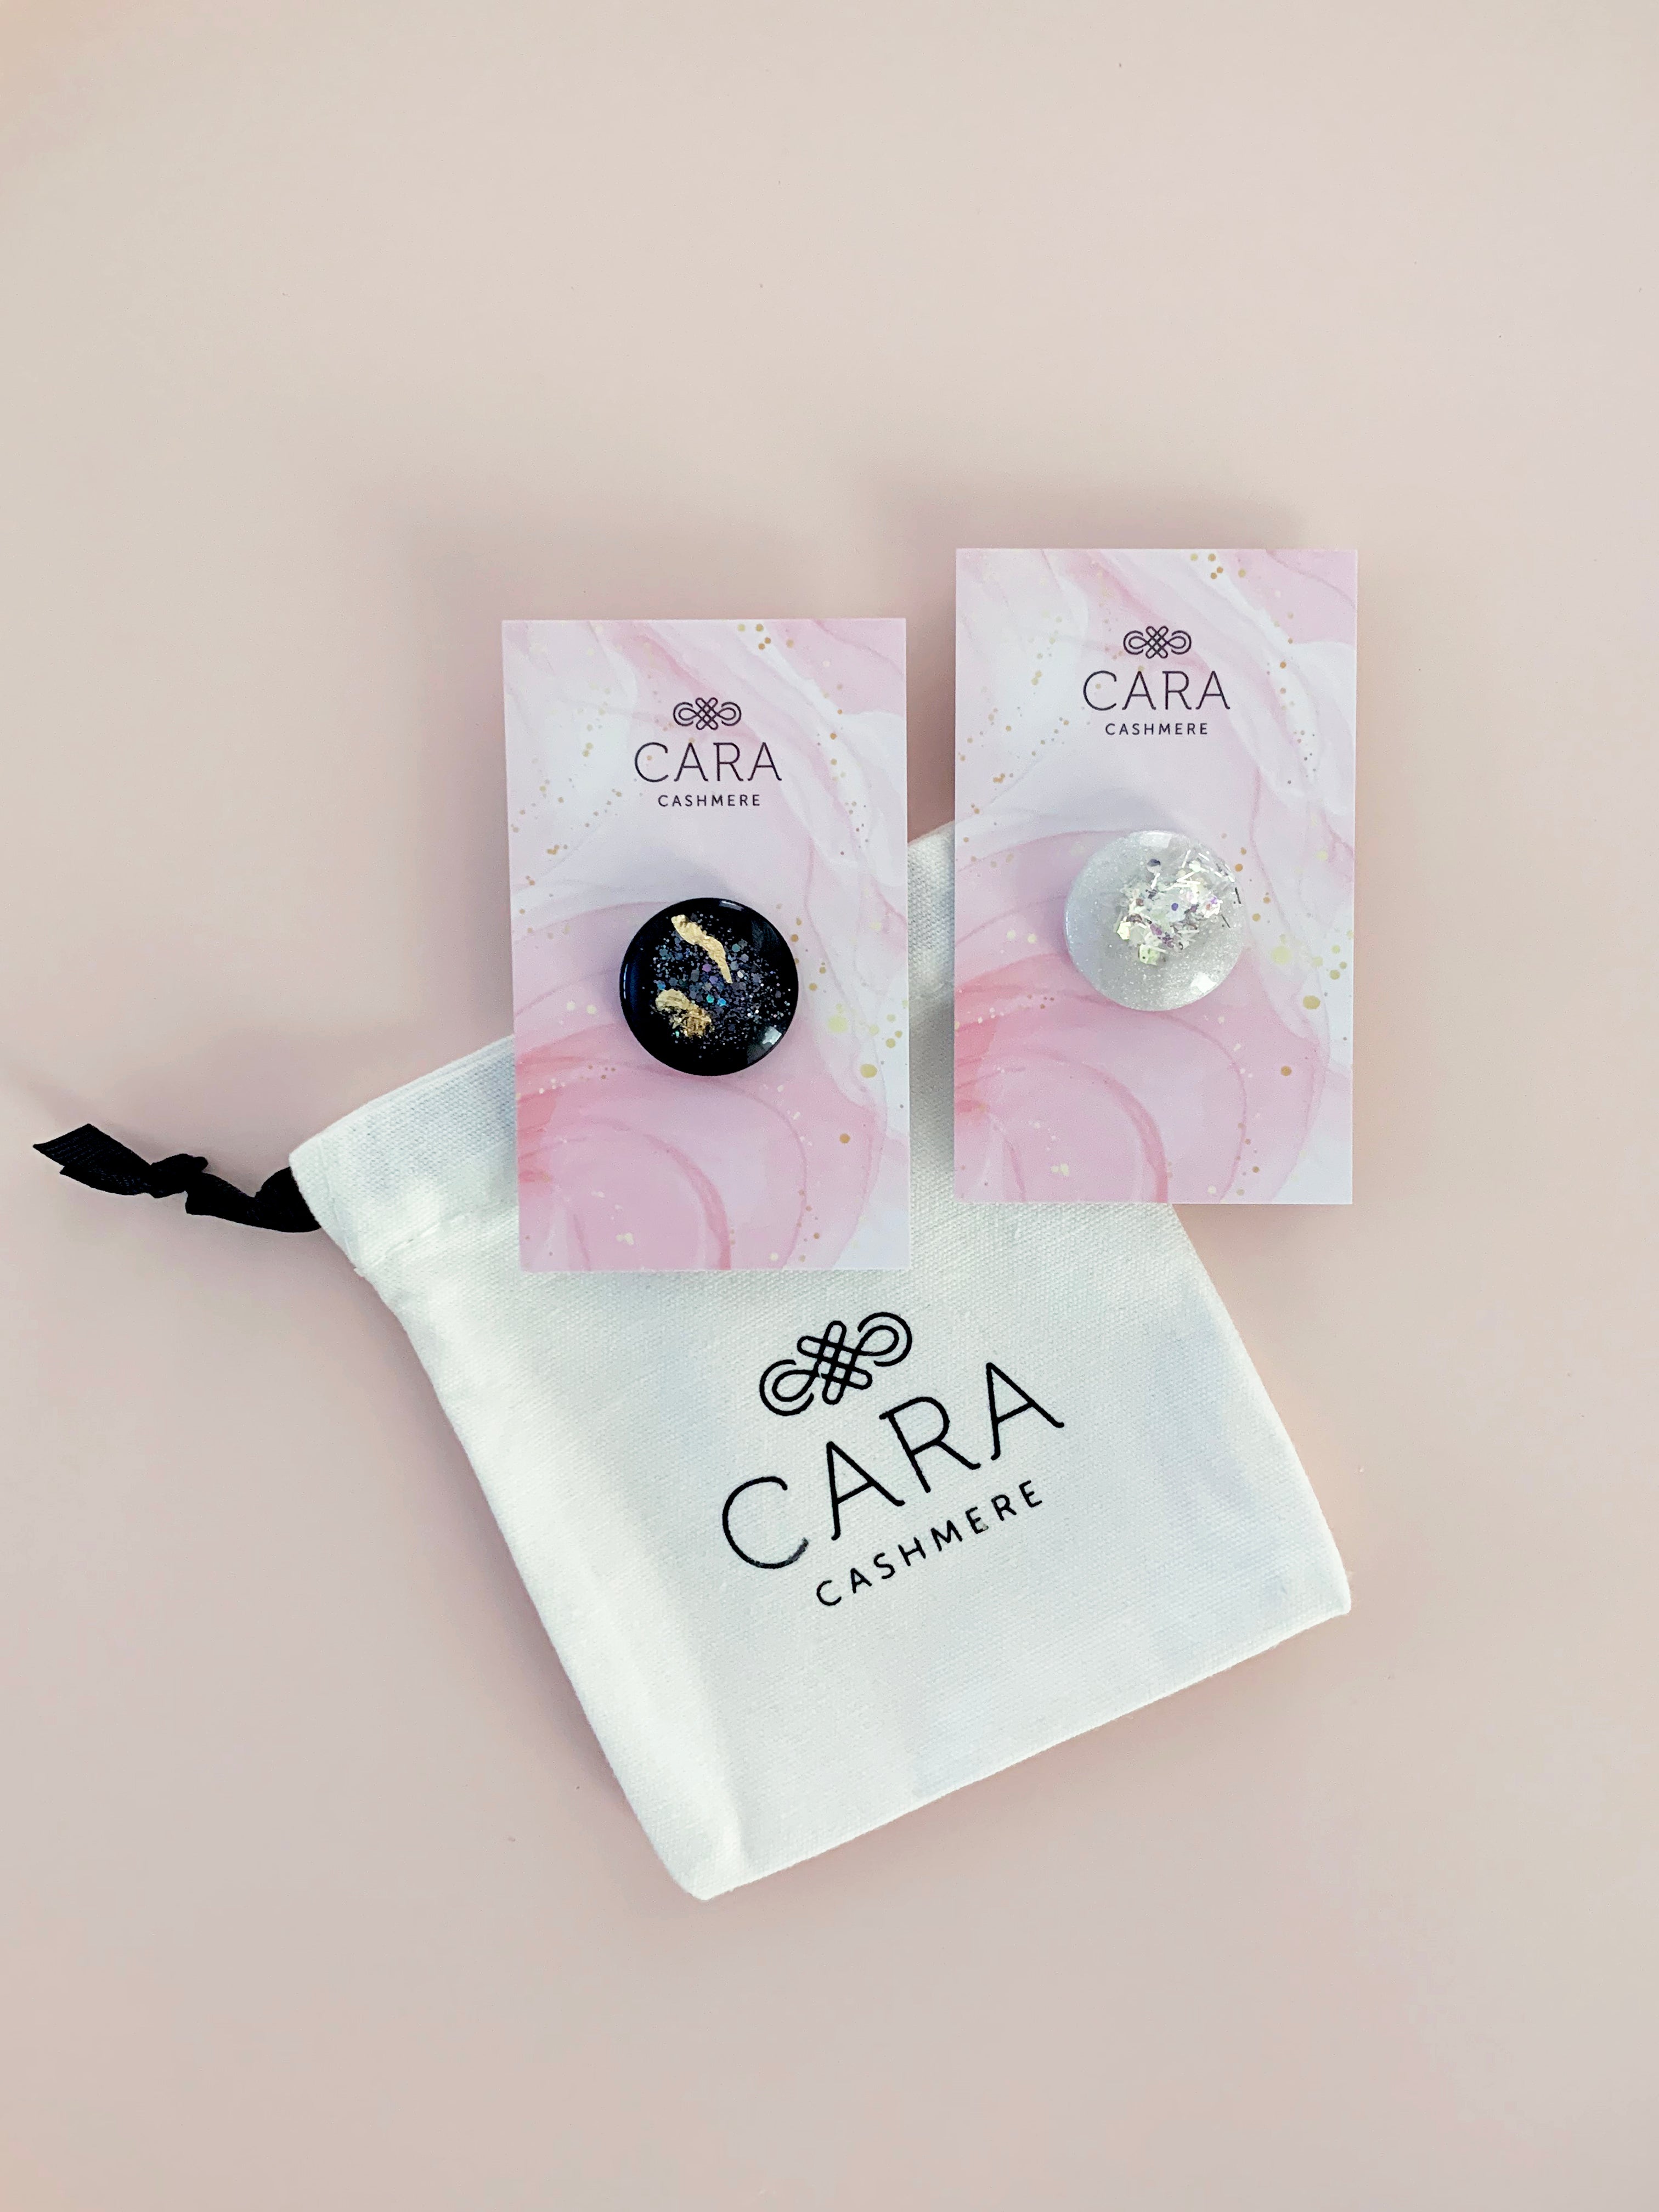 Black Cashmere Wrap - Cara Cashmere